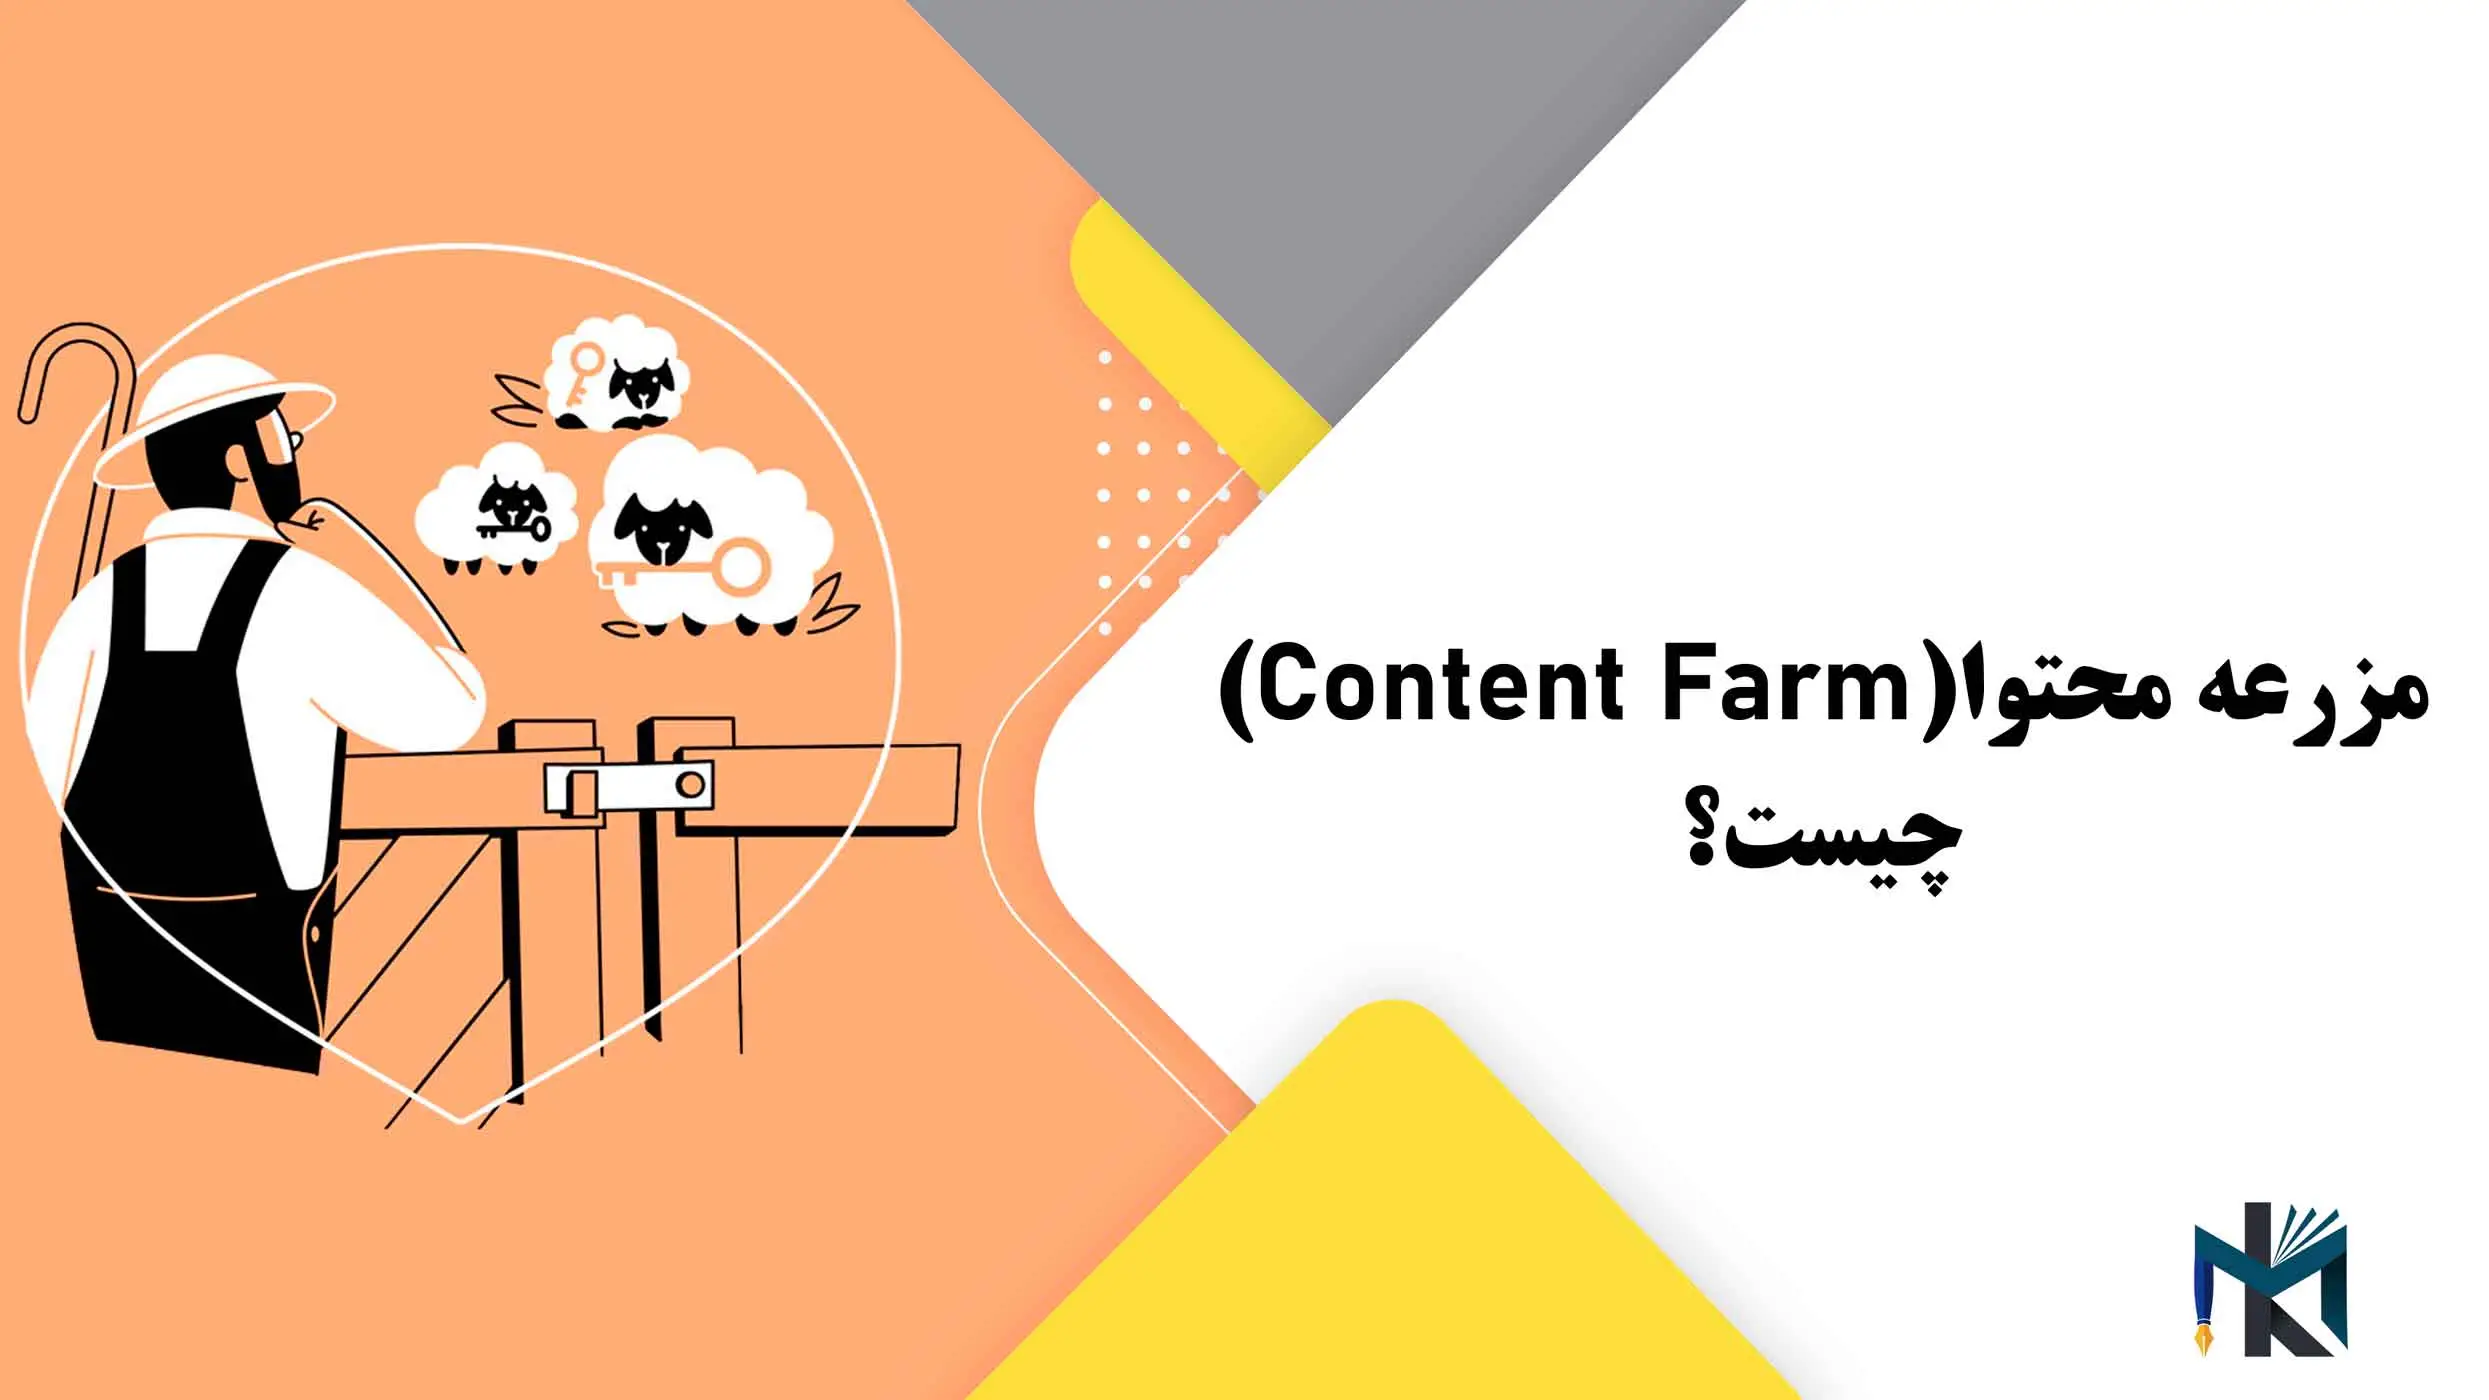 مزرعه محتوا(Content Farm) چیست؟